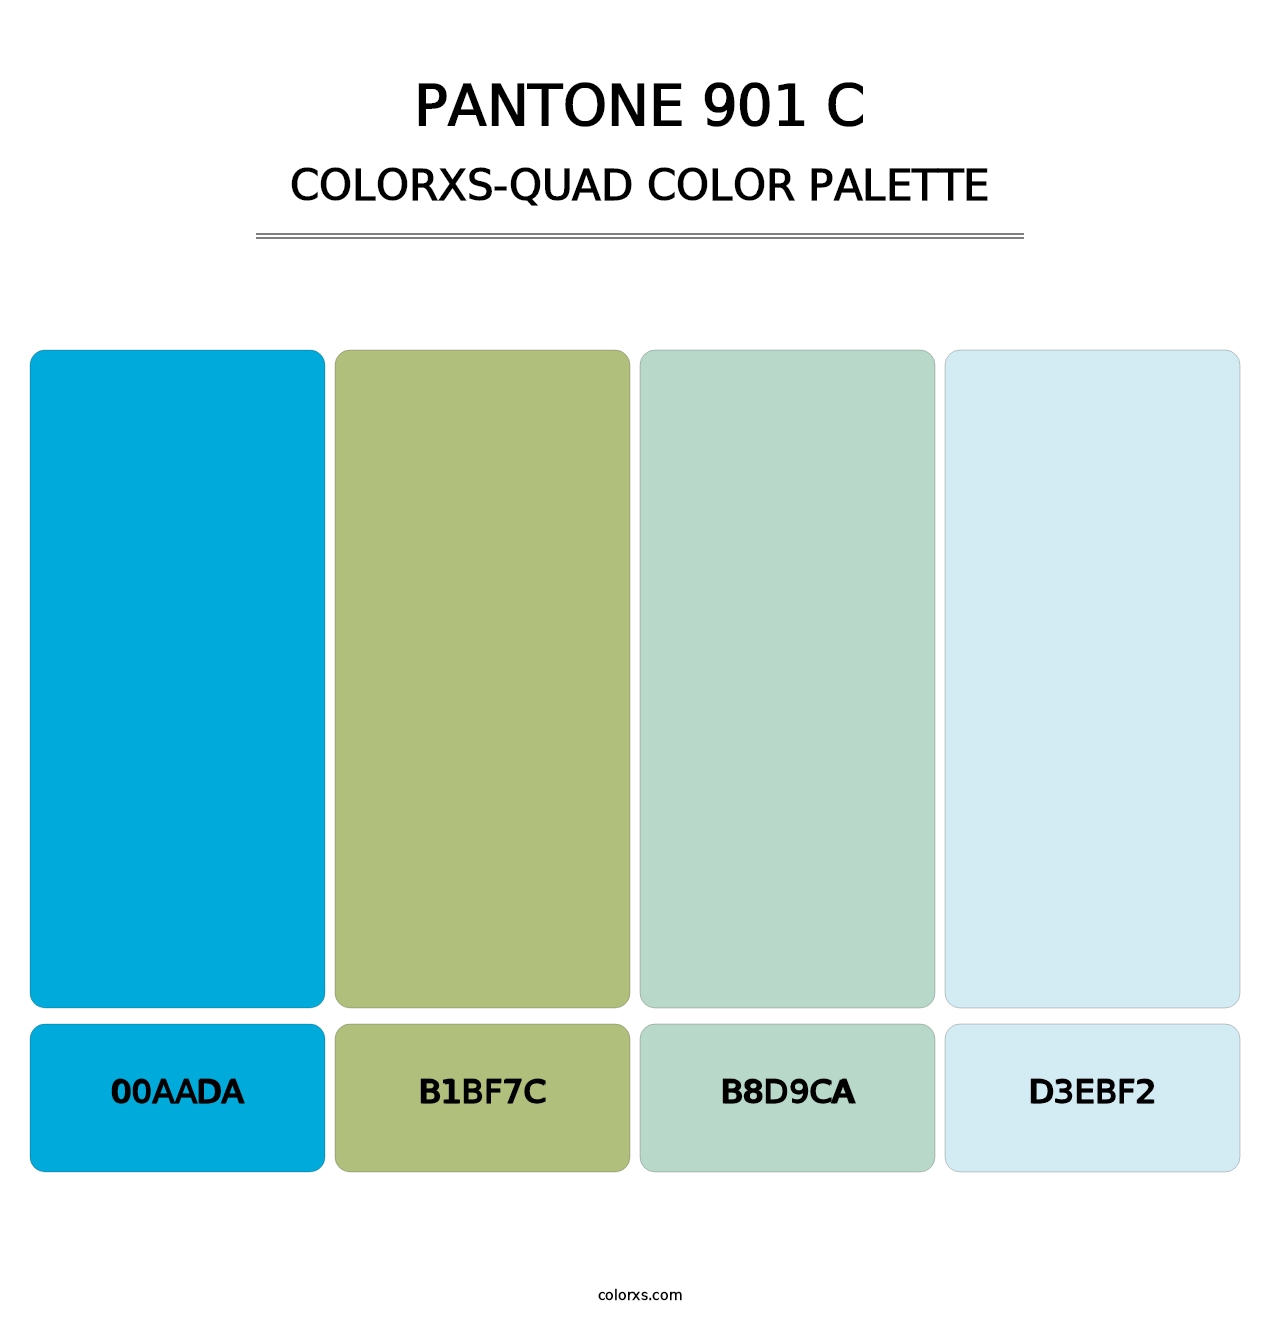 PANTONE 901 C - Colorxs Quad Palette